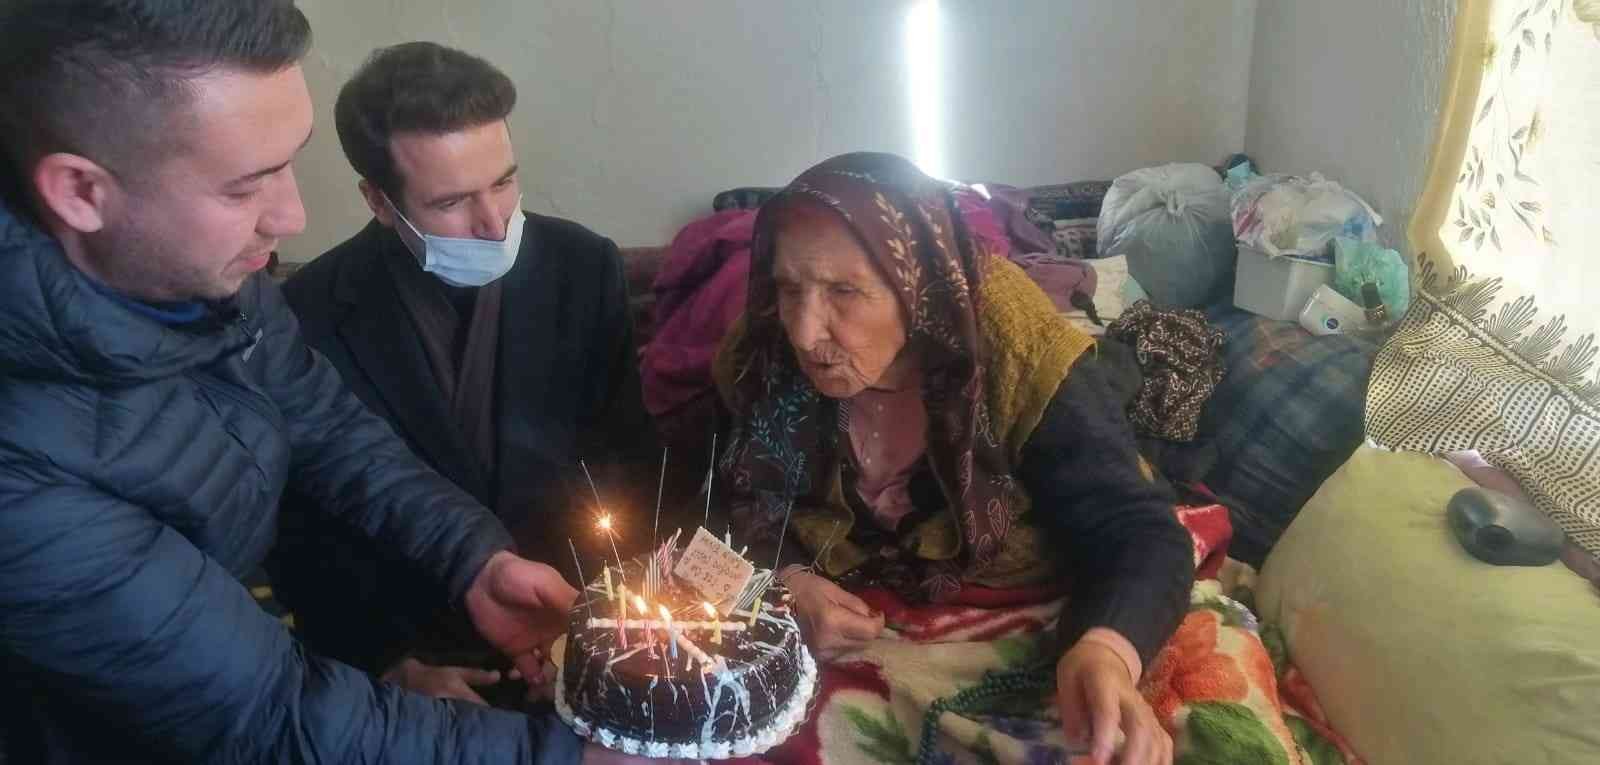 20 yıl önce öldü diye selasını verdiler, bugün 121. yaşını kutladı #yozgat